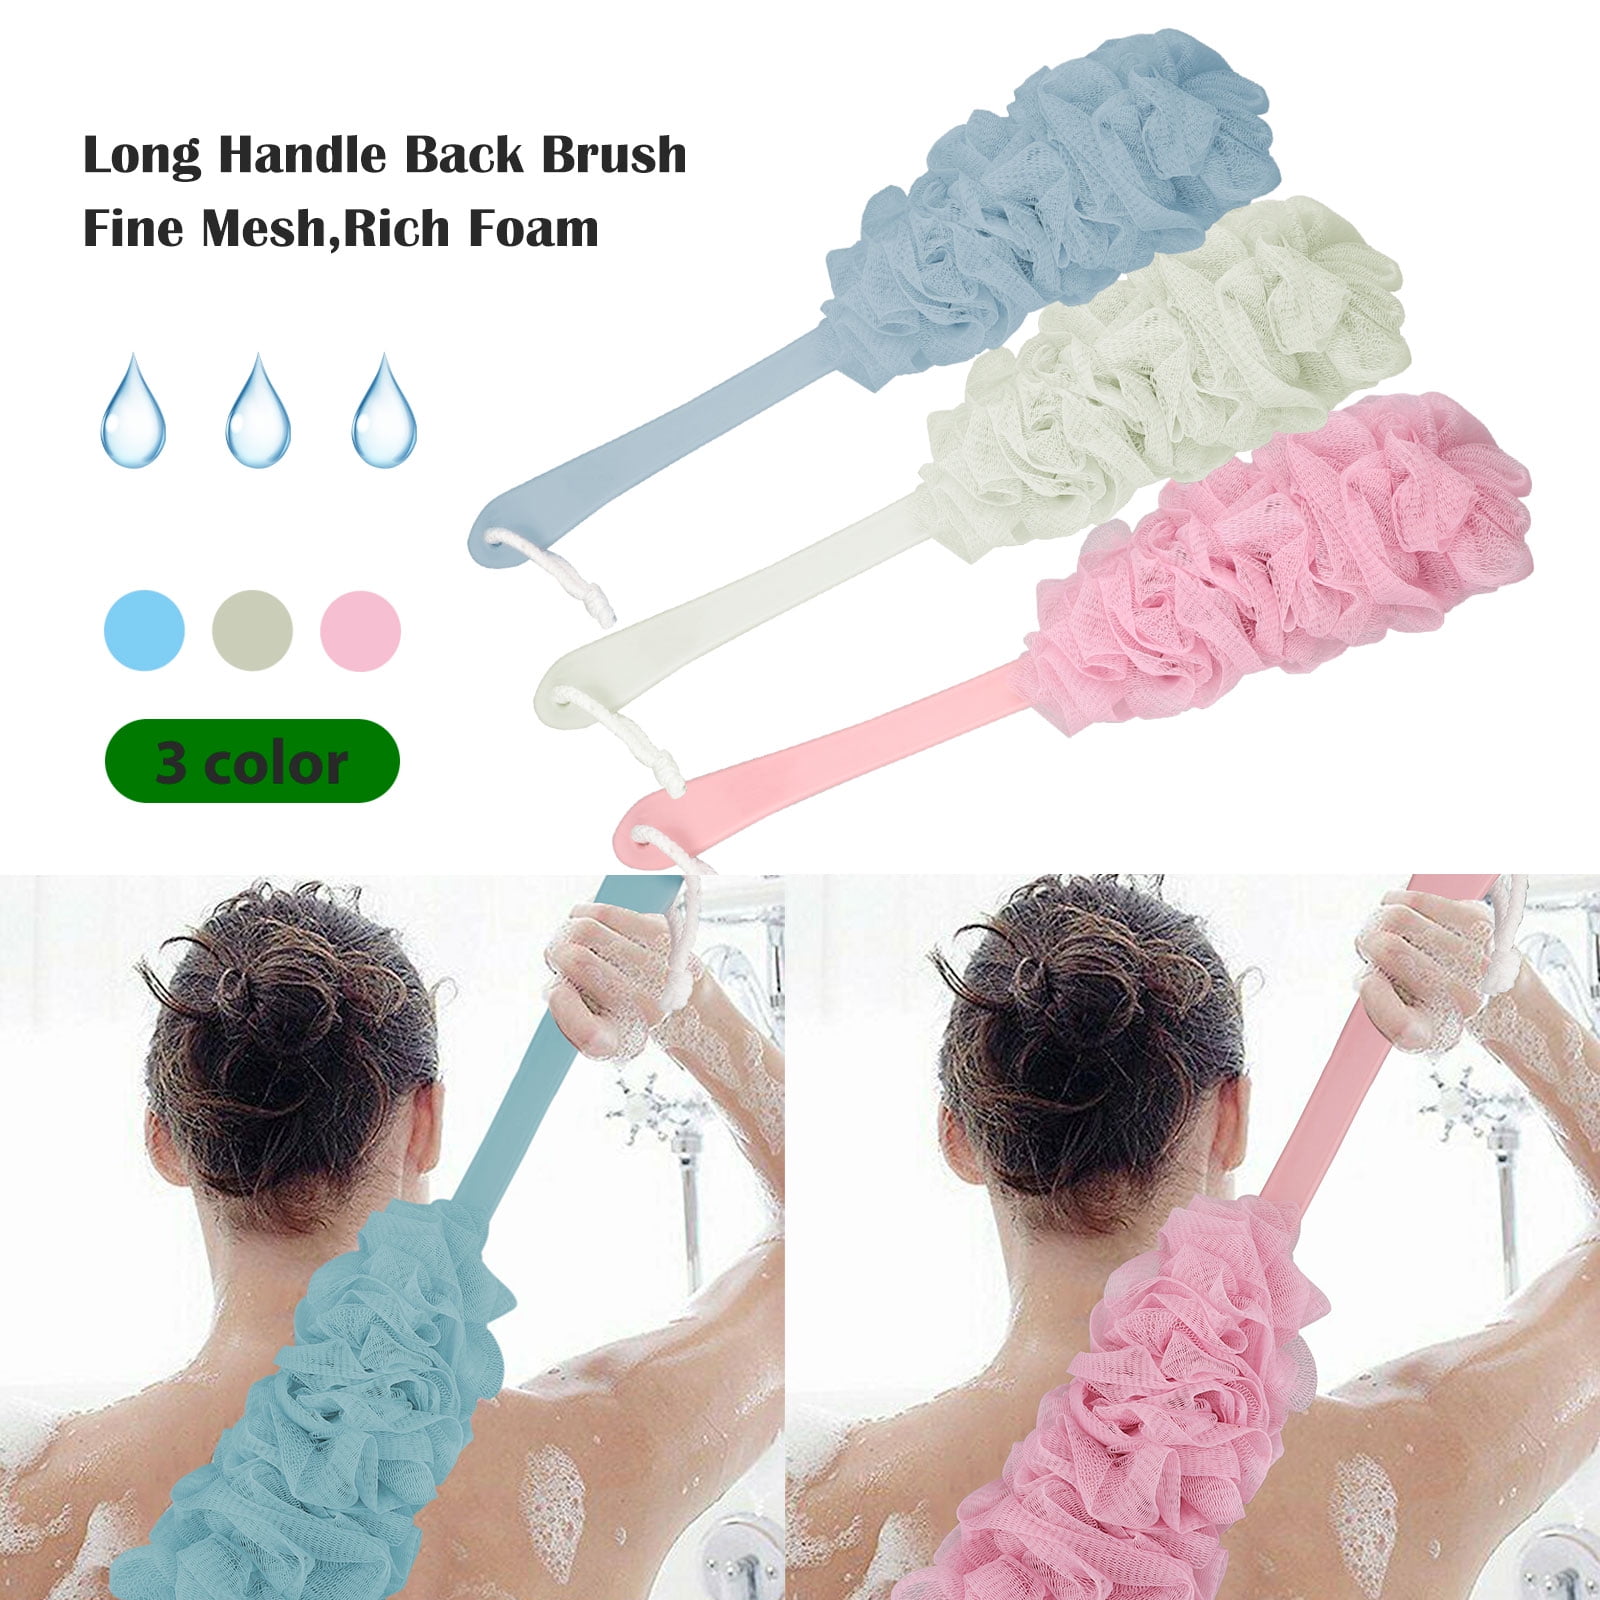 Long Handled Nylon Body Bath Shower Back Brush Scrubber Cleaning Massager 